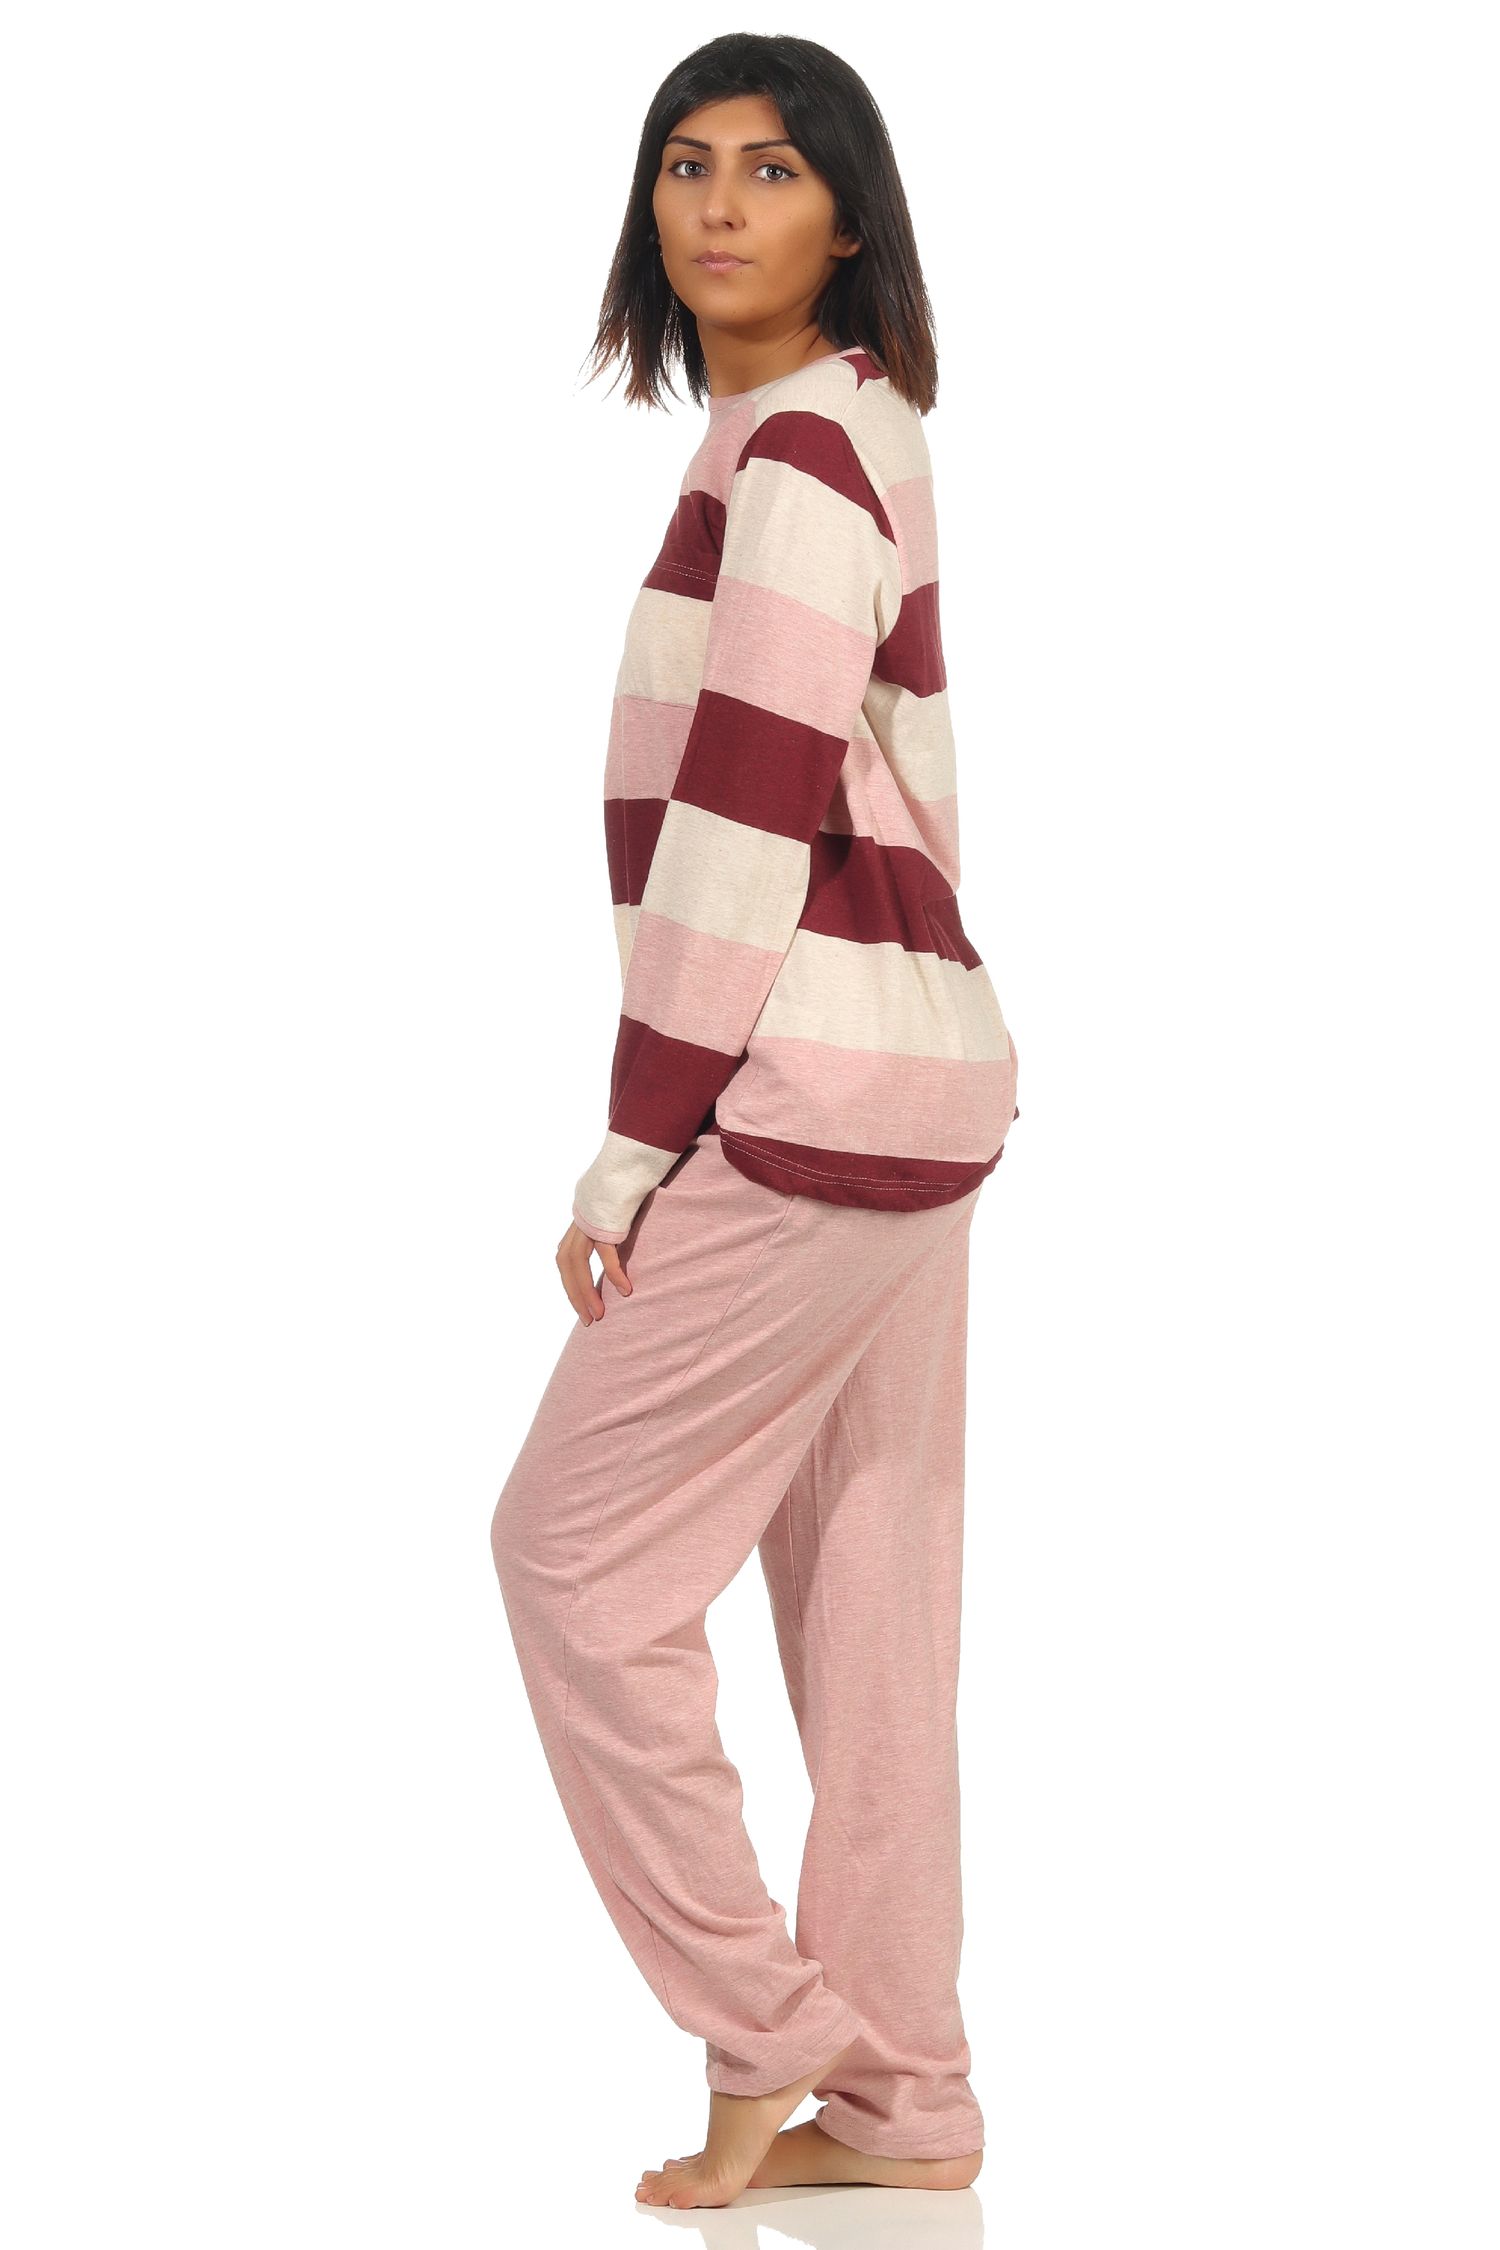 Wunderschöner Damen Pyjama langarm - auch in Übergrössen - tolle Block Streifen Optik